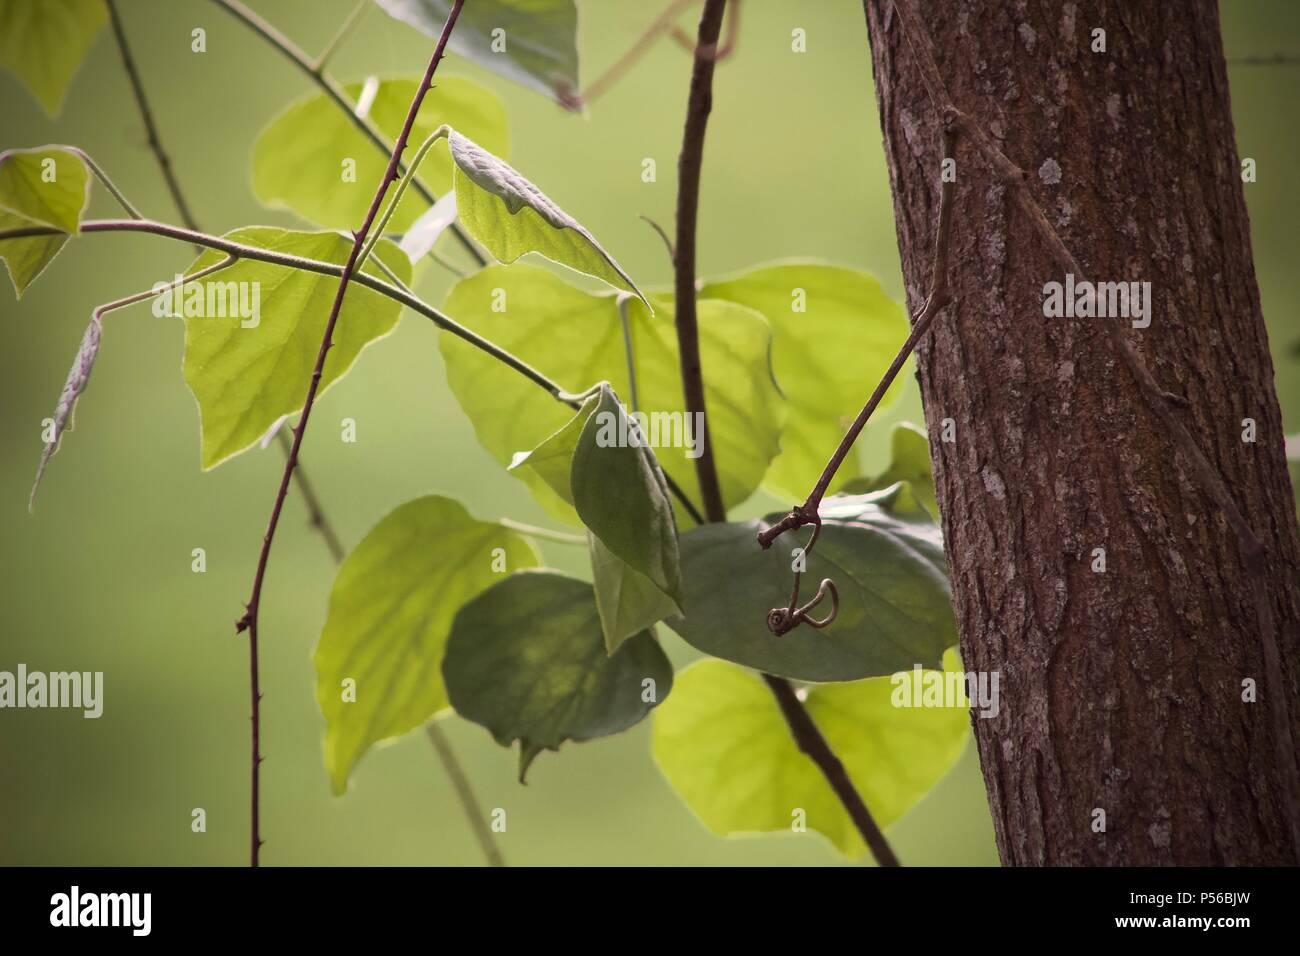 Foto von Blätter gegen weichen, grünen Hintergrund mit dem Stamm eines kleinen Baum im Fokus Stockfoto